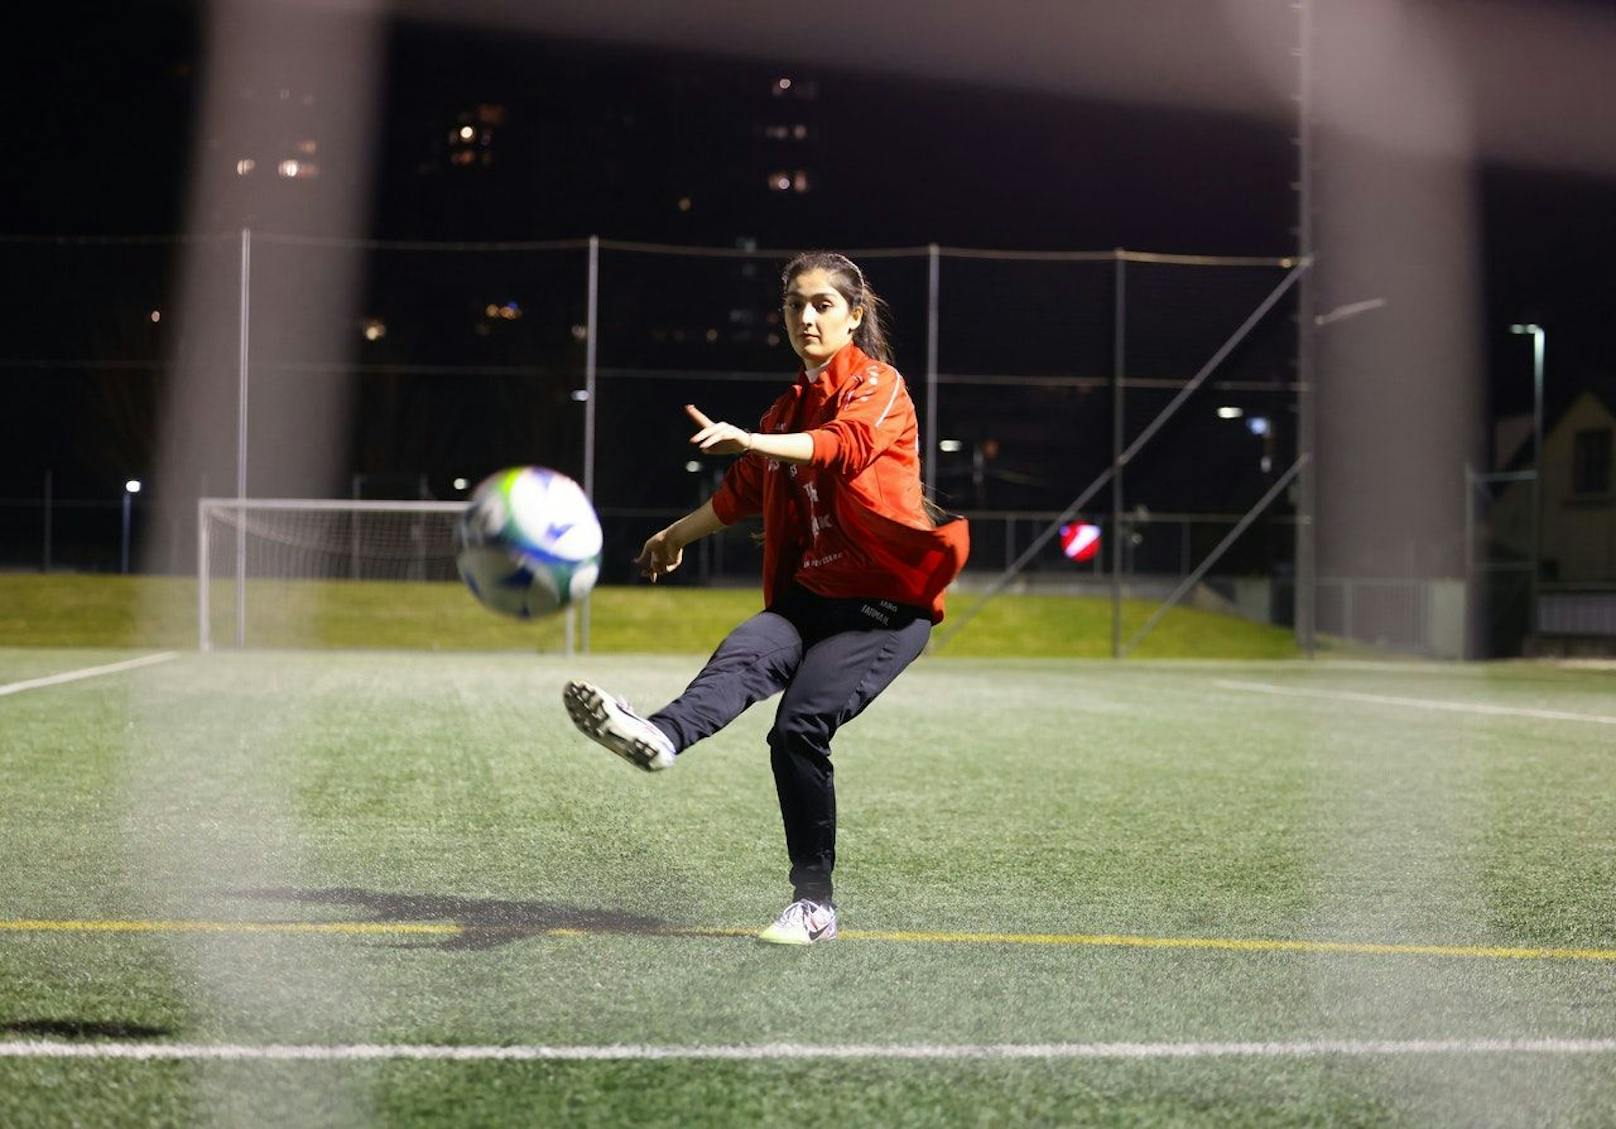 Die Liebe zum Ball begleitet Fatima Hashemi seit einigen Jahren. Am Fußballplatz kann sie abschalten und den stressigen Alltag hinter sich lassen.